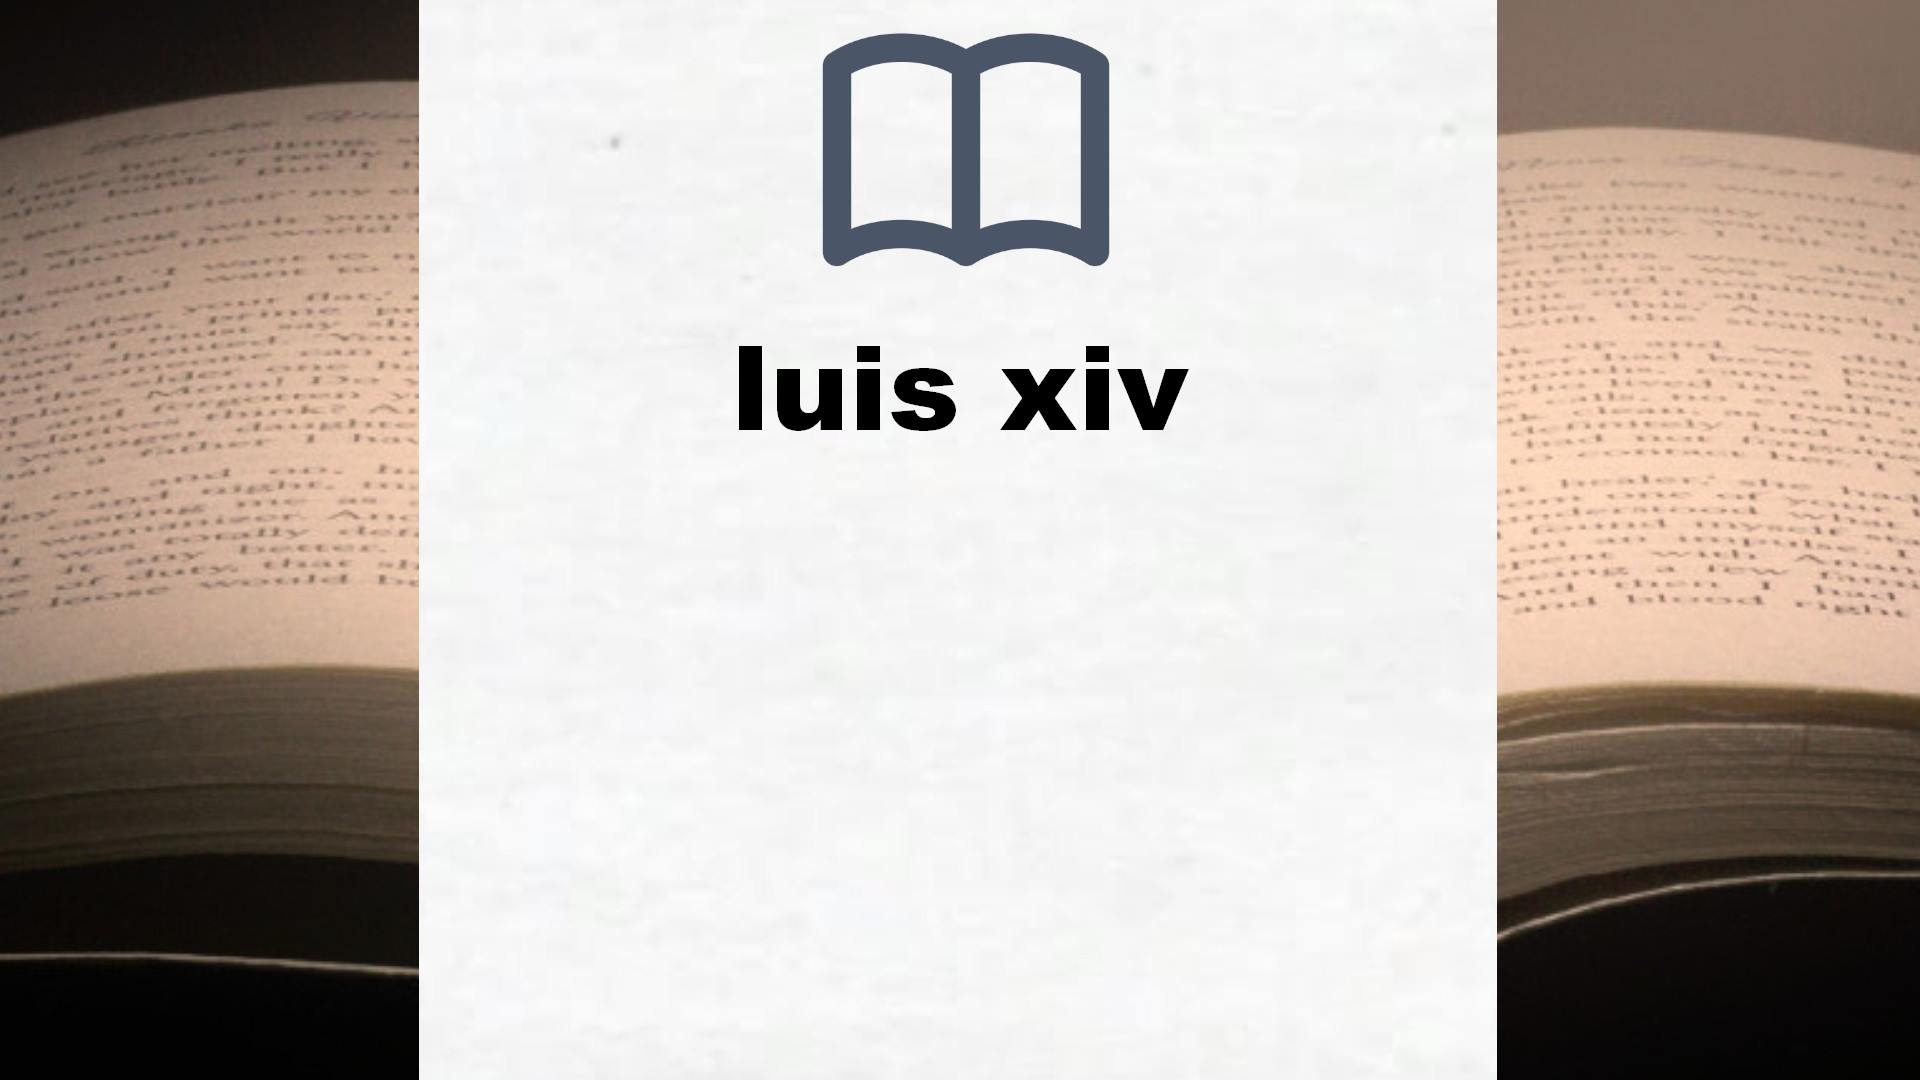 Libros sobre luis xiv